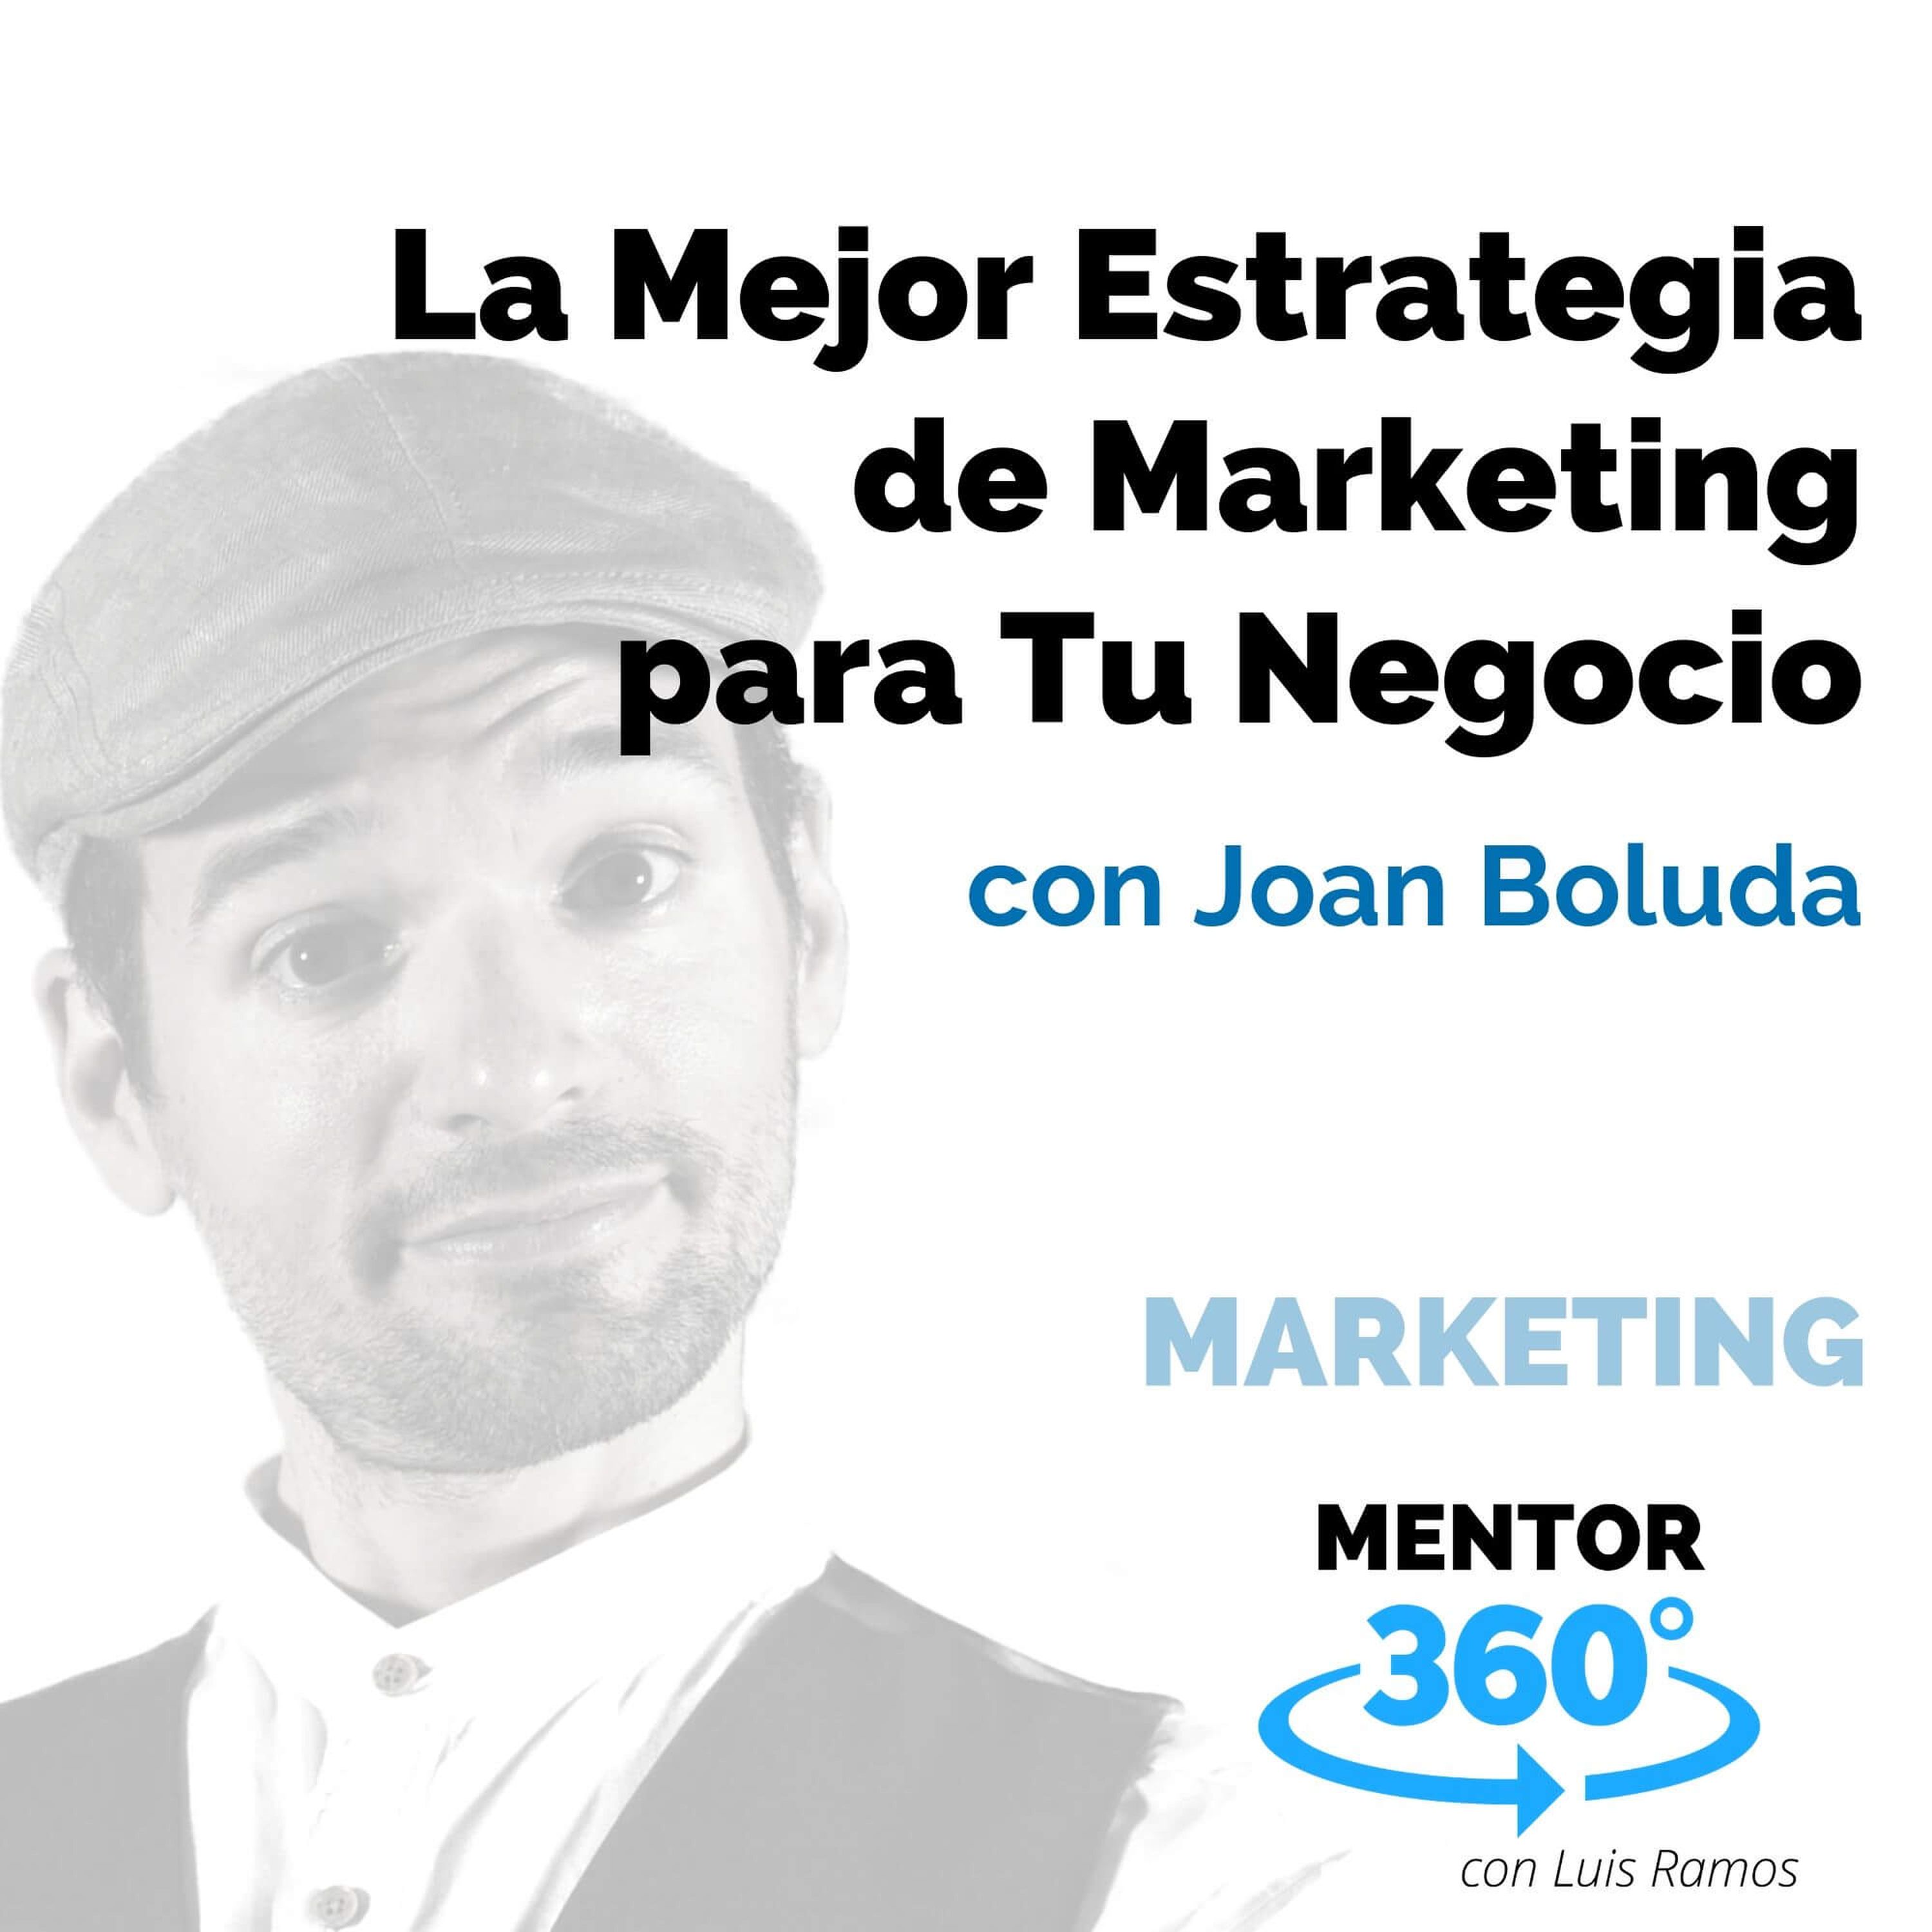 La Mejor Estrategia de Marketing para Tu Negocio, con Joan Boluda - MARKETING - MENTOR360